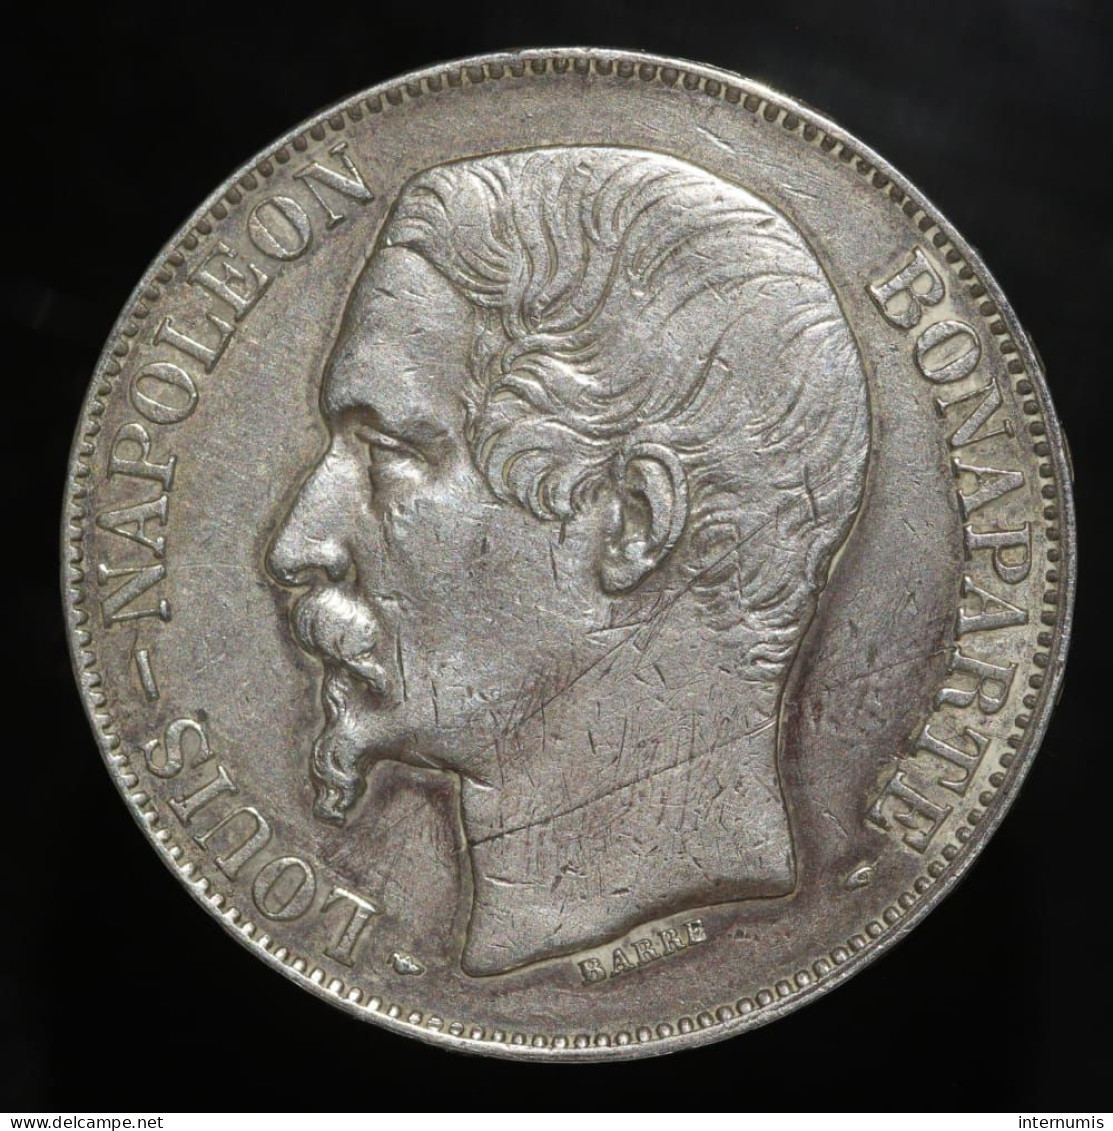 France, Louis-Napoleon Bonaparte, 5 Francs, 1852, Tête Large, Argent (Silver), TTB (EF), KM#773, G.726, F.329/2 - 5 Francs